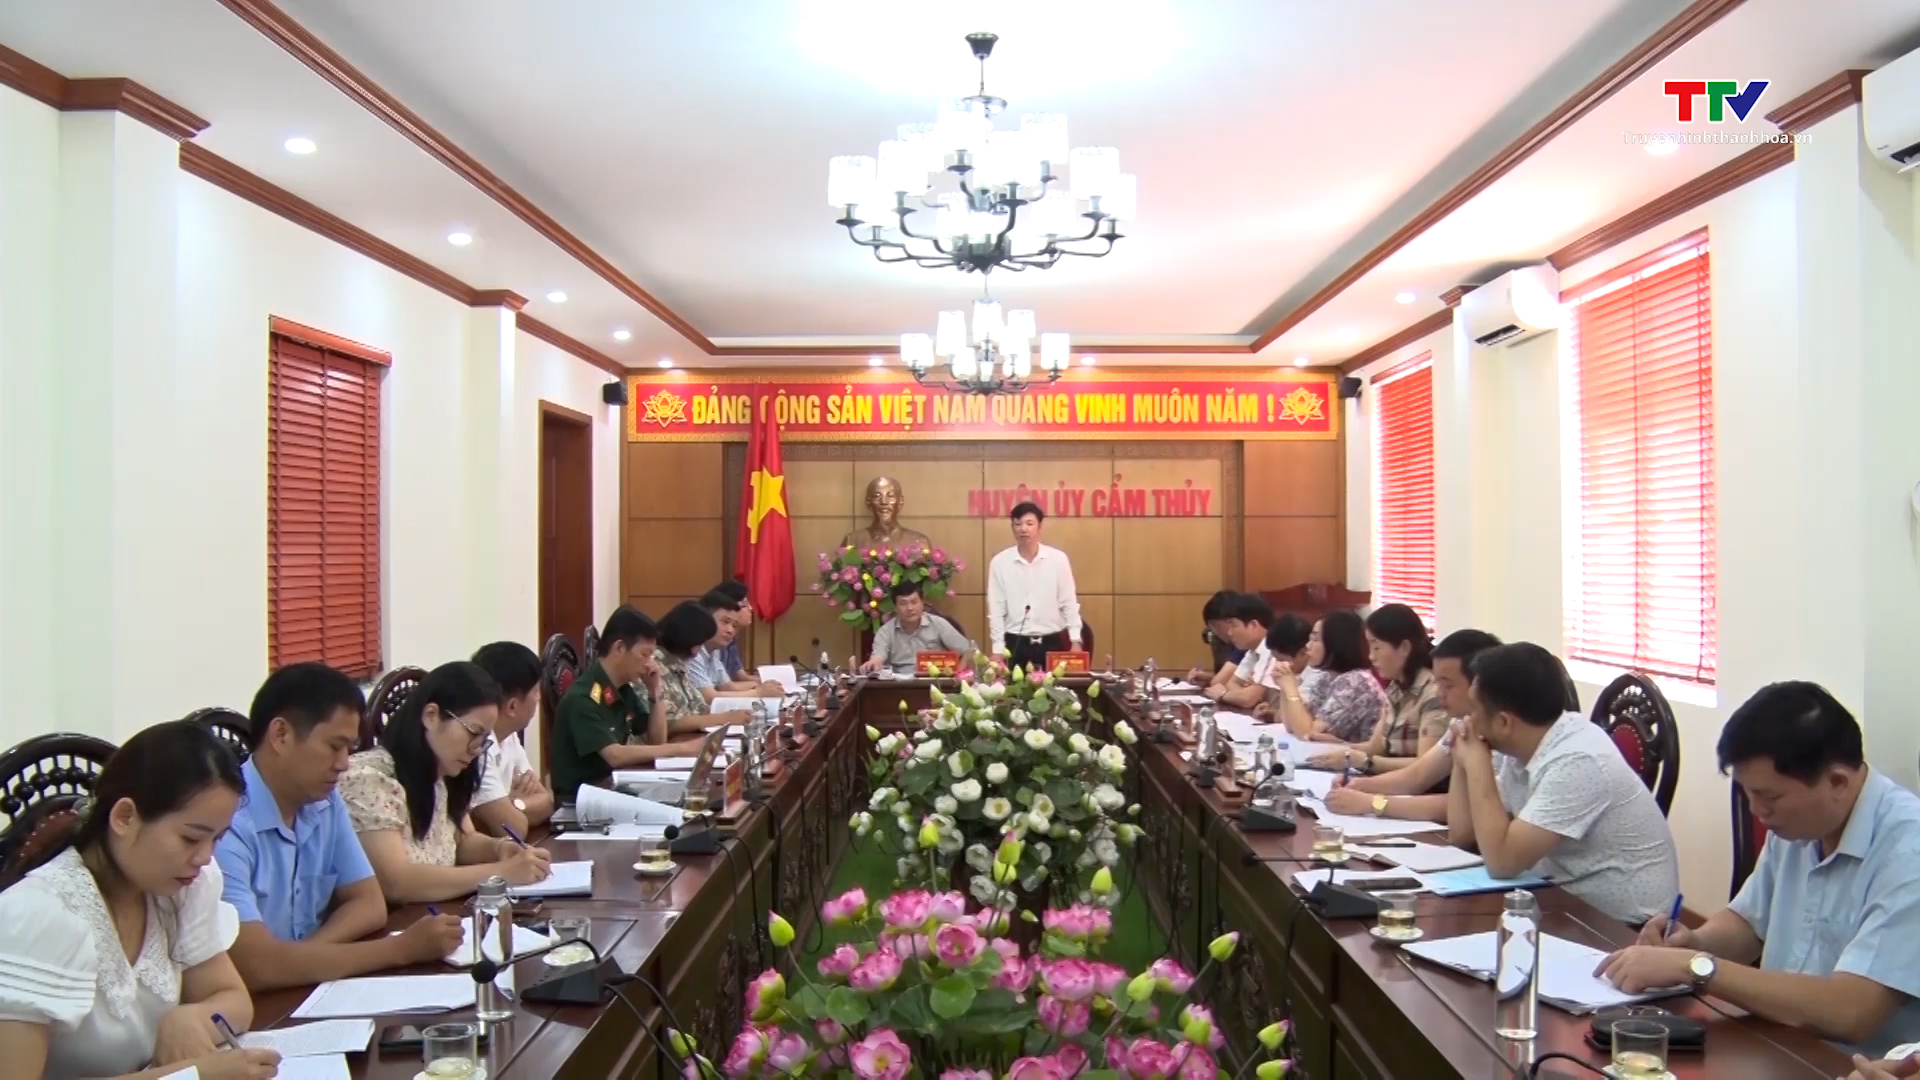 Đảng bộ huyện Cẩm Thủy tiếp tục đẩy mạnh học tập và làm theo tư tưởng, đạo đức, phong cách Hồ Chí Minh - Ảnh 3.